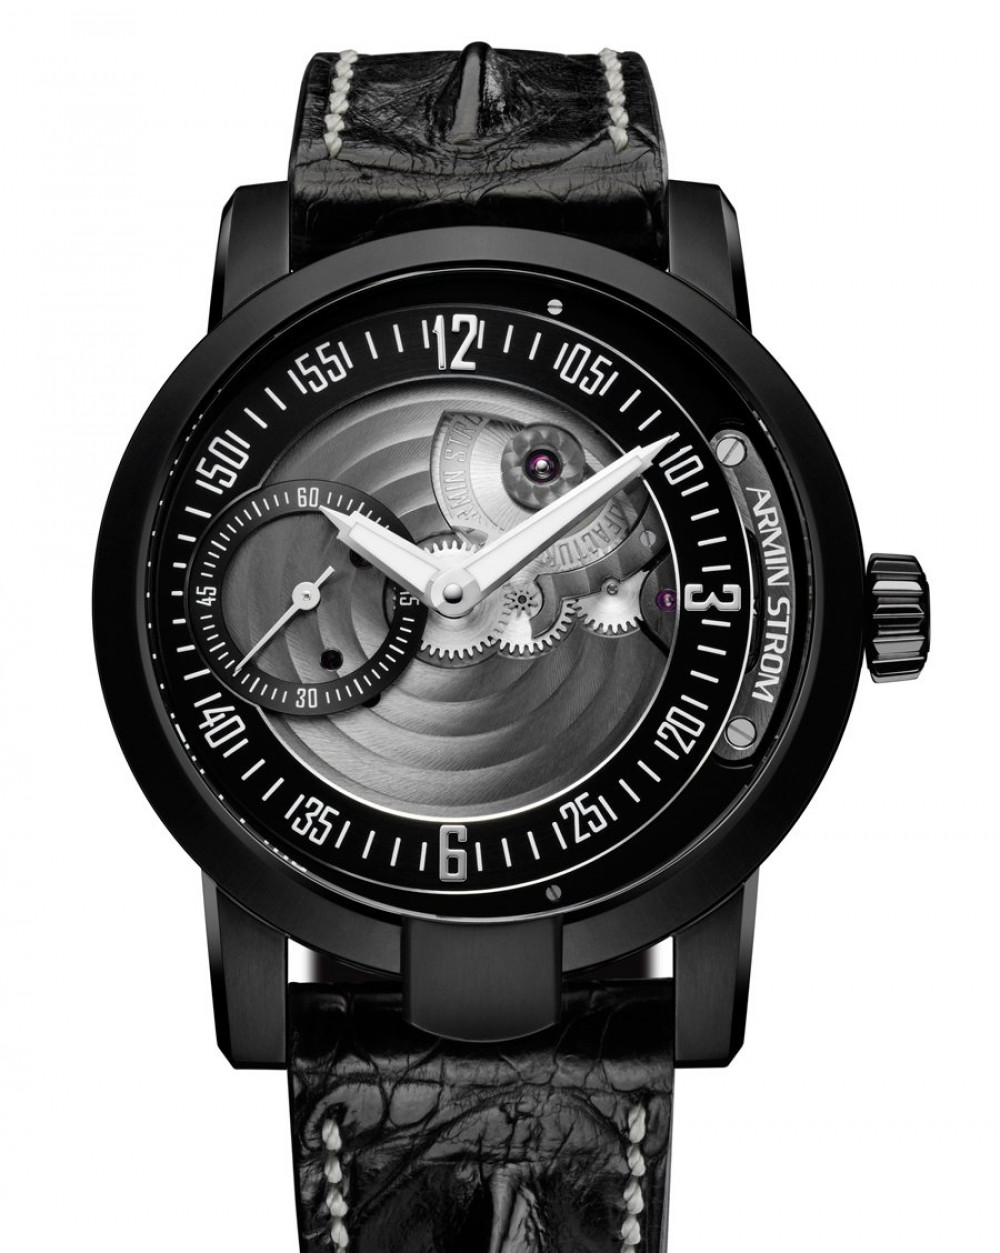 Zegarek firmy Armin Strom, model Manual Earth